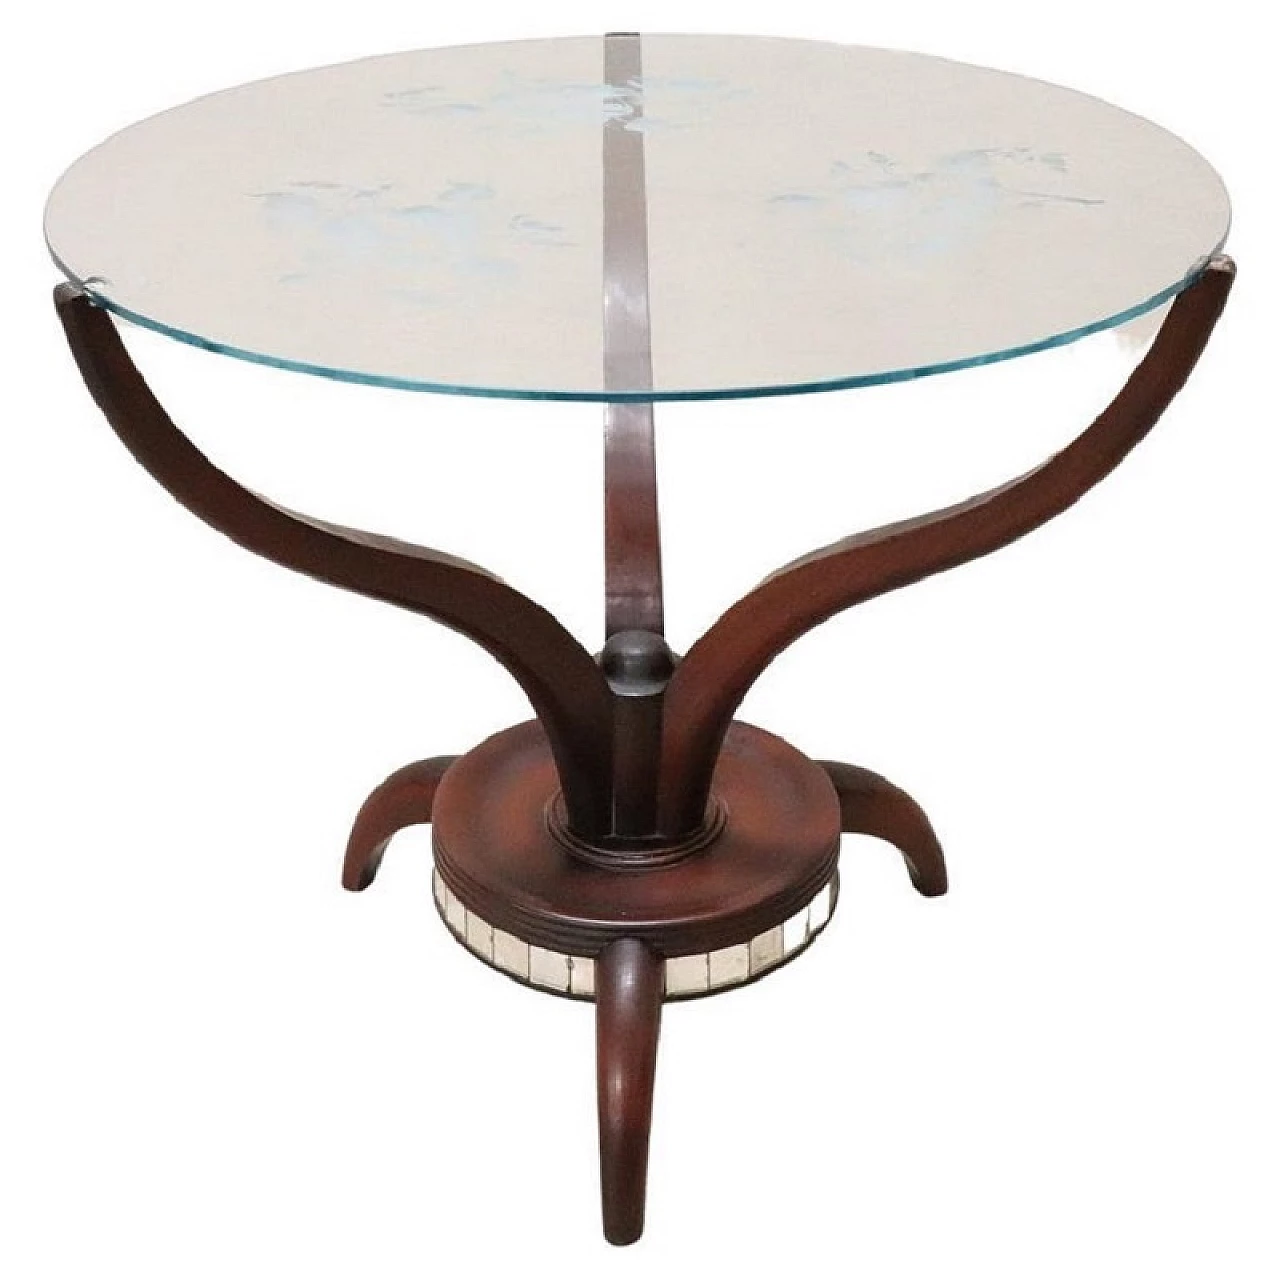 Tavolino rotondo con base in legno e piano in vetro con decorazioni, anni '50 1